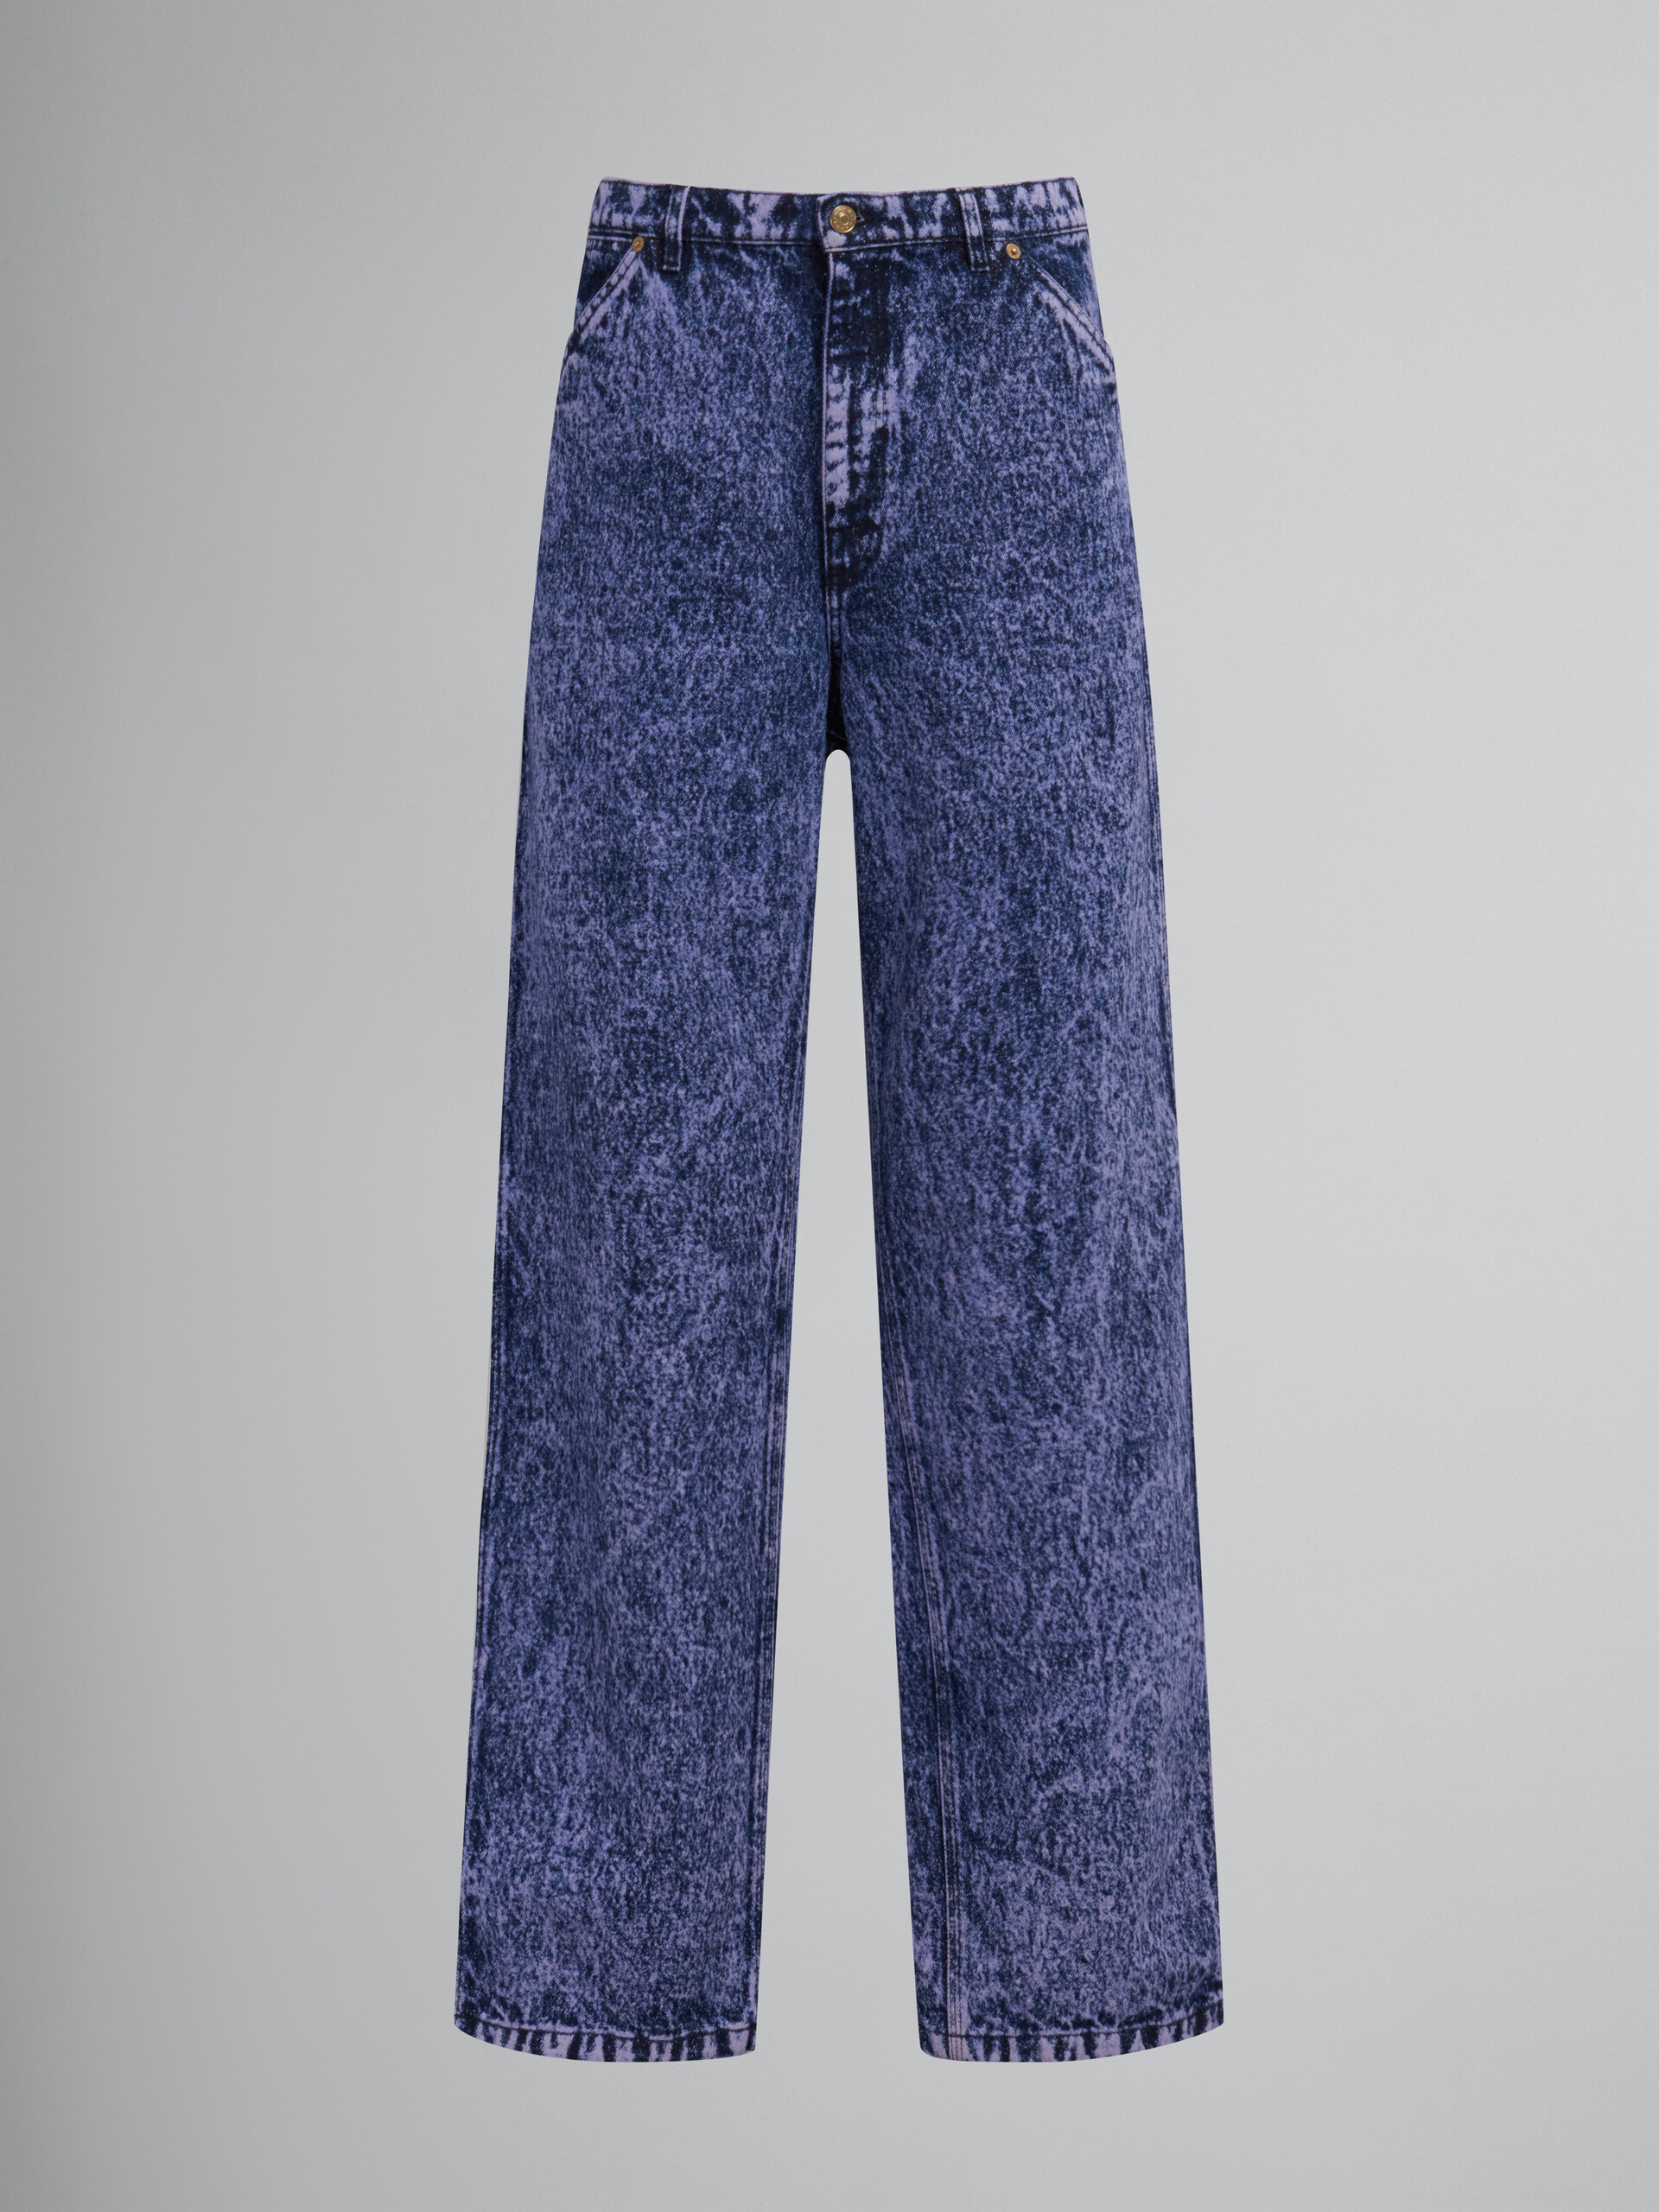 Pantalón de denim azul efecto mármol - Pantalones - Image 1